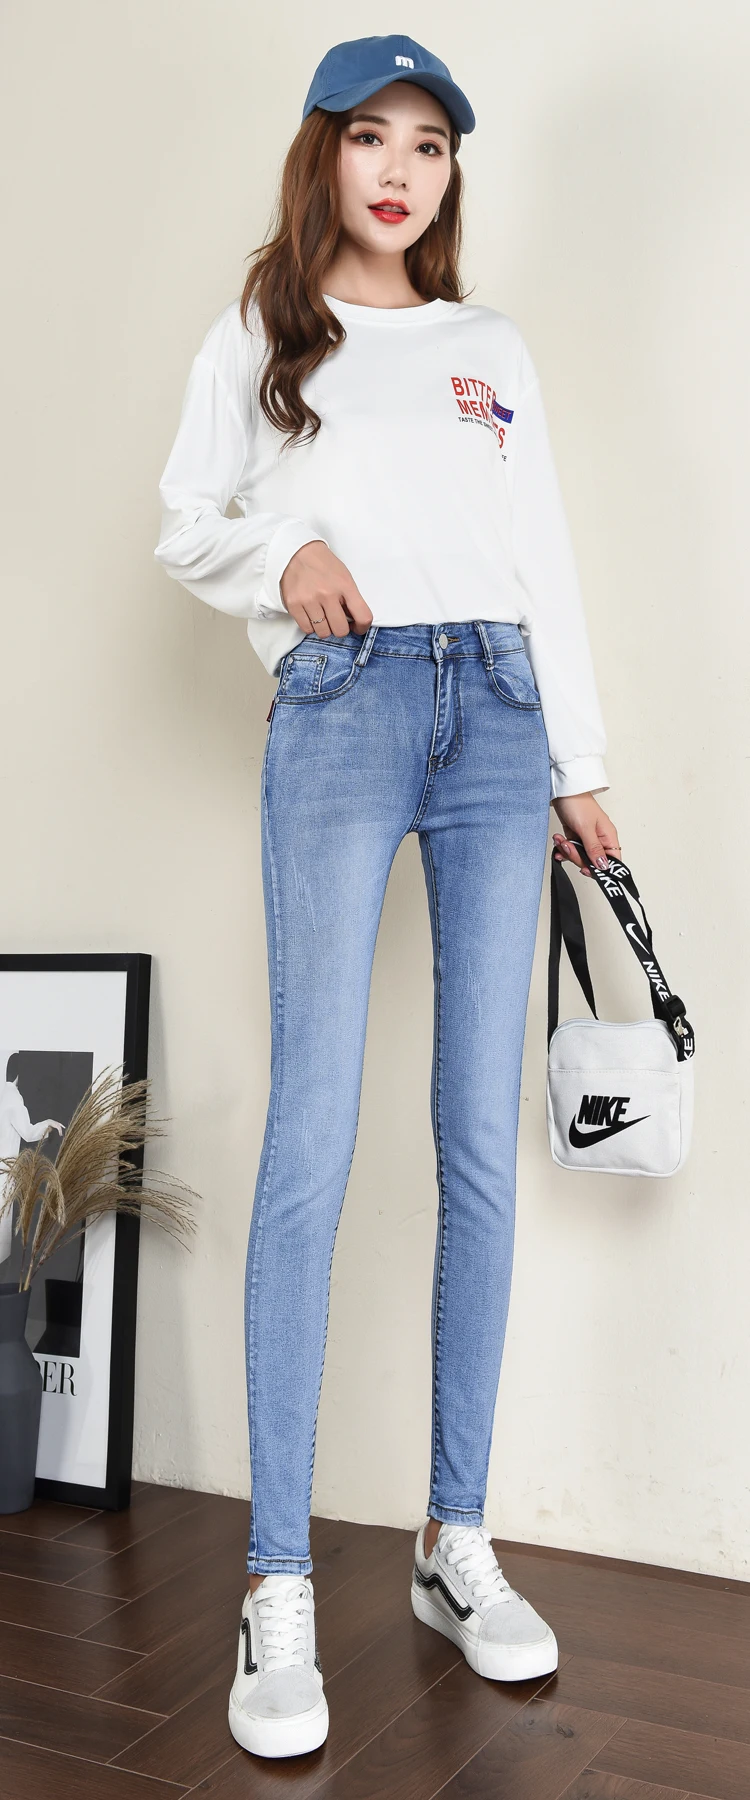 MDINCN джинсы для женщин Высокая талия джинсы женские высокие эластичные большого размера растягивающиеся женские джинсы потертые джинсы узкие брюки